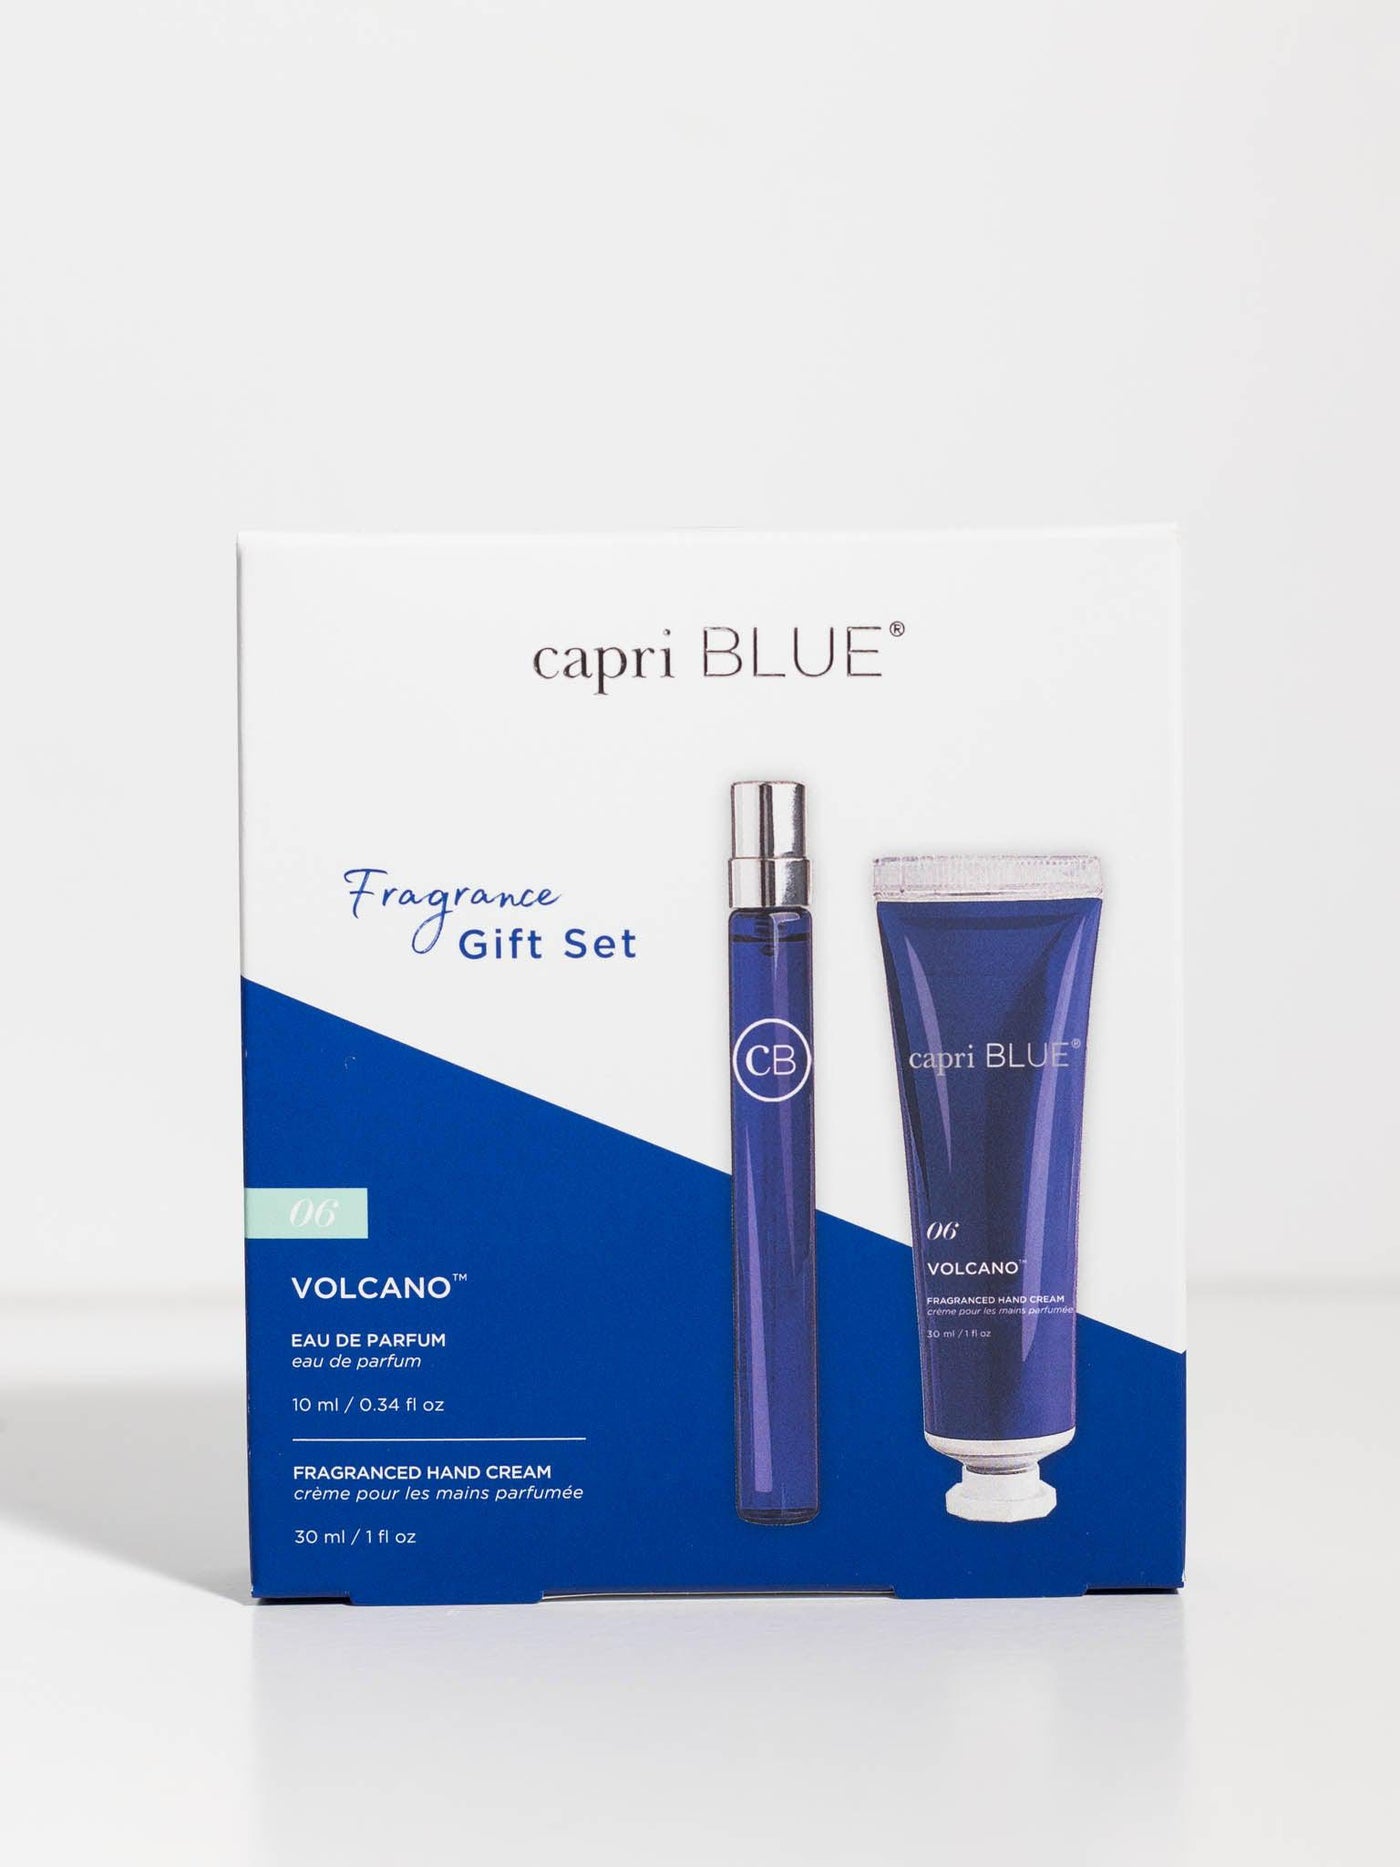 capri blue gift set